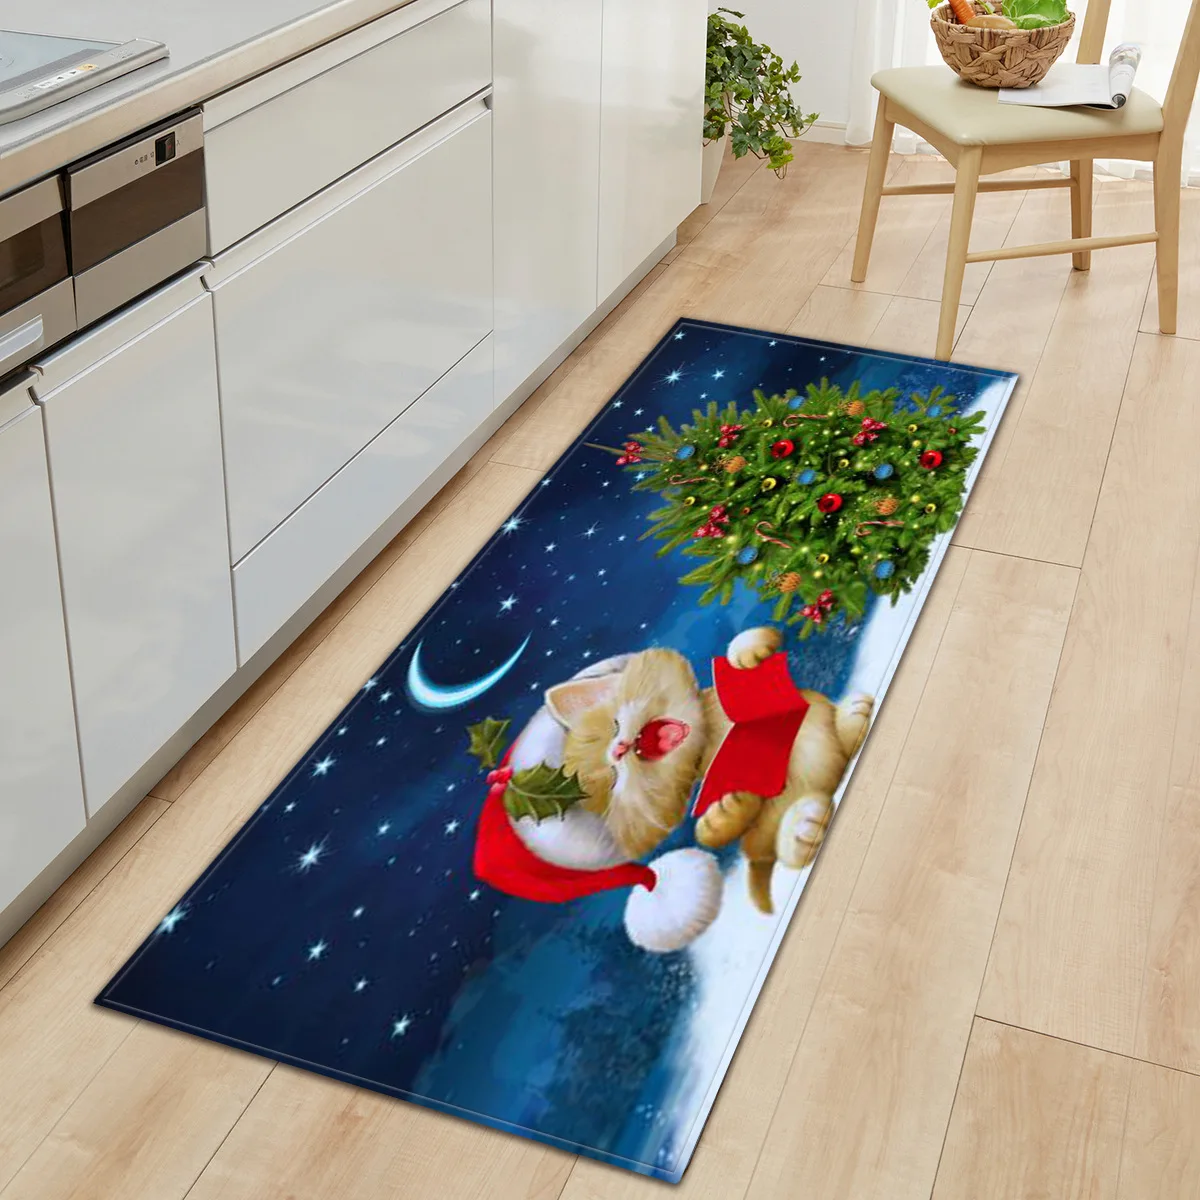 6 размер 3D Рождественский Санта-Клаус Противоскользящий коврик для кухонной комнаты, фланелевый ковер, Рождественский диван, коврик для двери, Полоска, напольный коврик